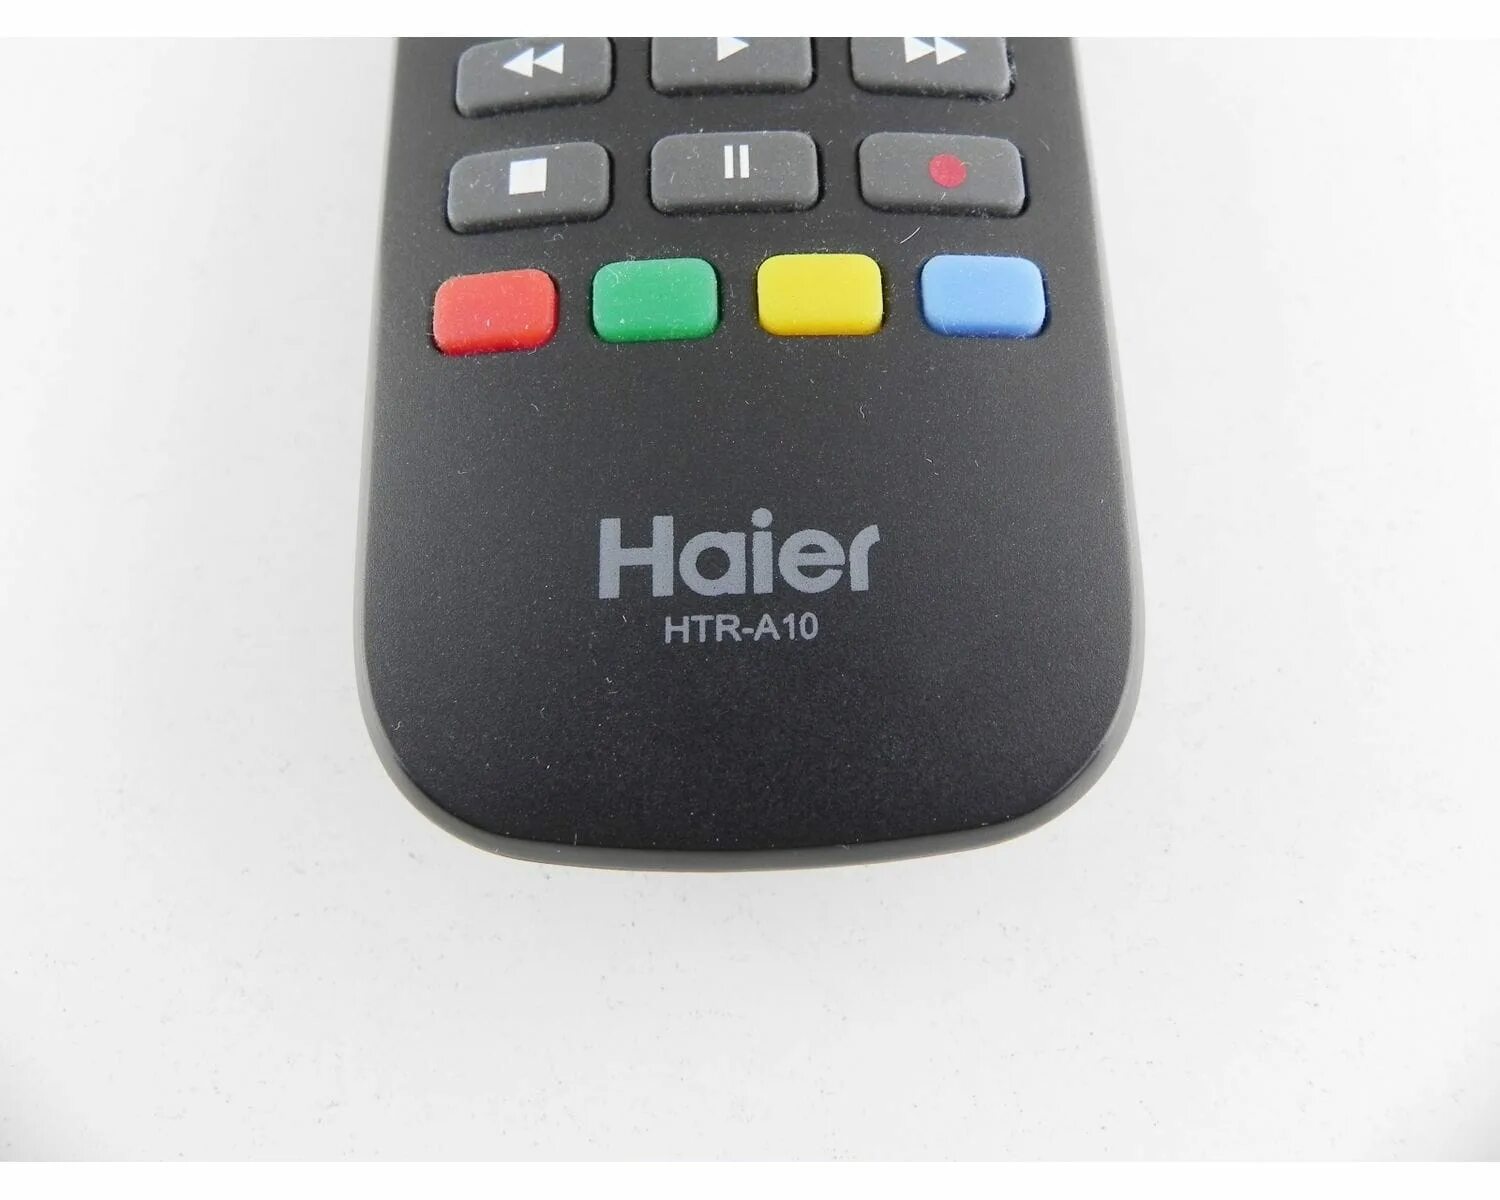 Пульт на телефоне для телевизора haier. Пульт Haier HTR-a10. Haier le32k6000s. HTR-a10 пульт. Пульт для телевизора Haier HTR-a10.